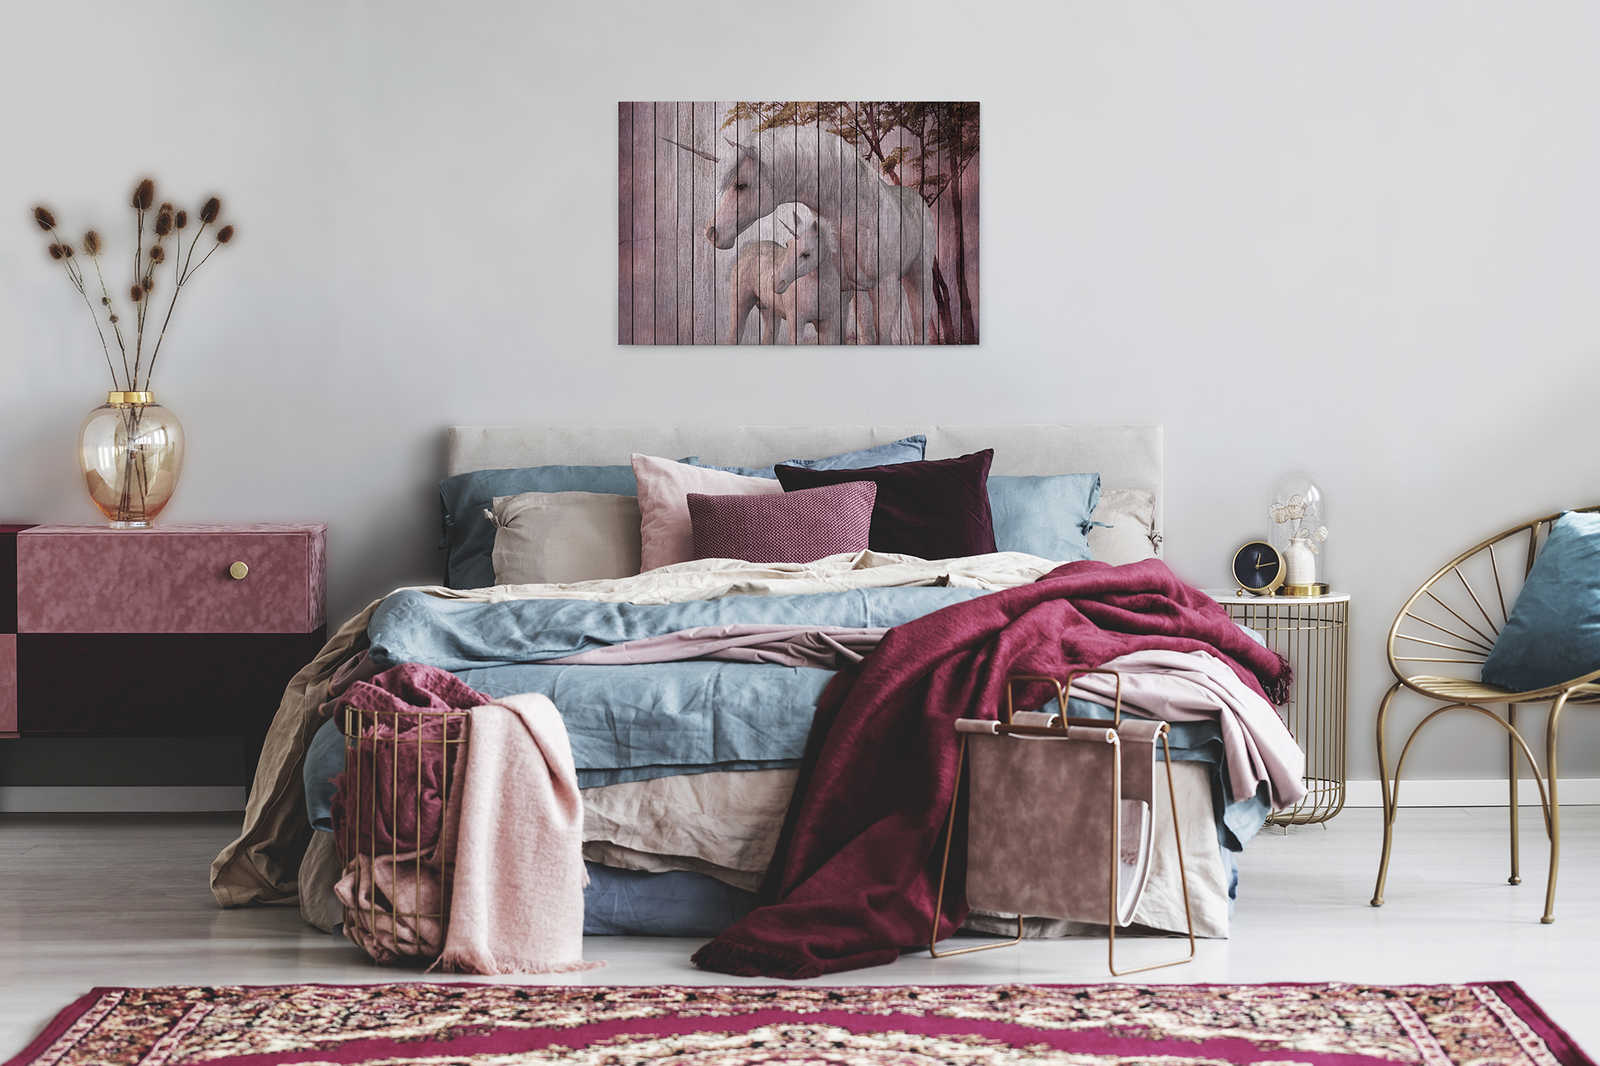             Fantasia 4 - Pittura su tela con effetto unicorno e legno - 0,90 m x 0,60 m
        